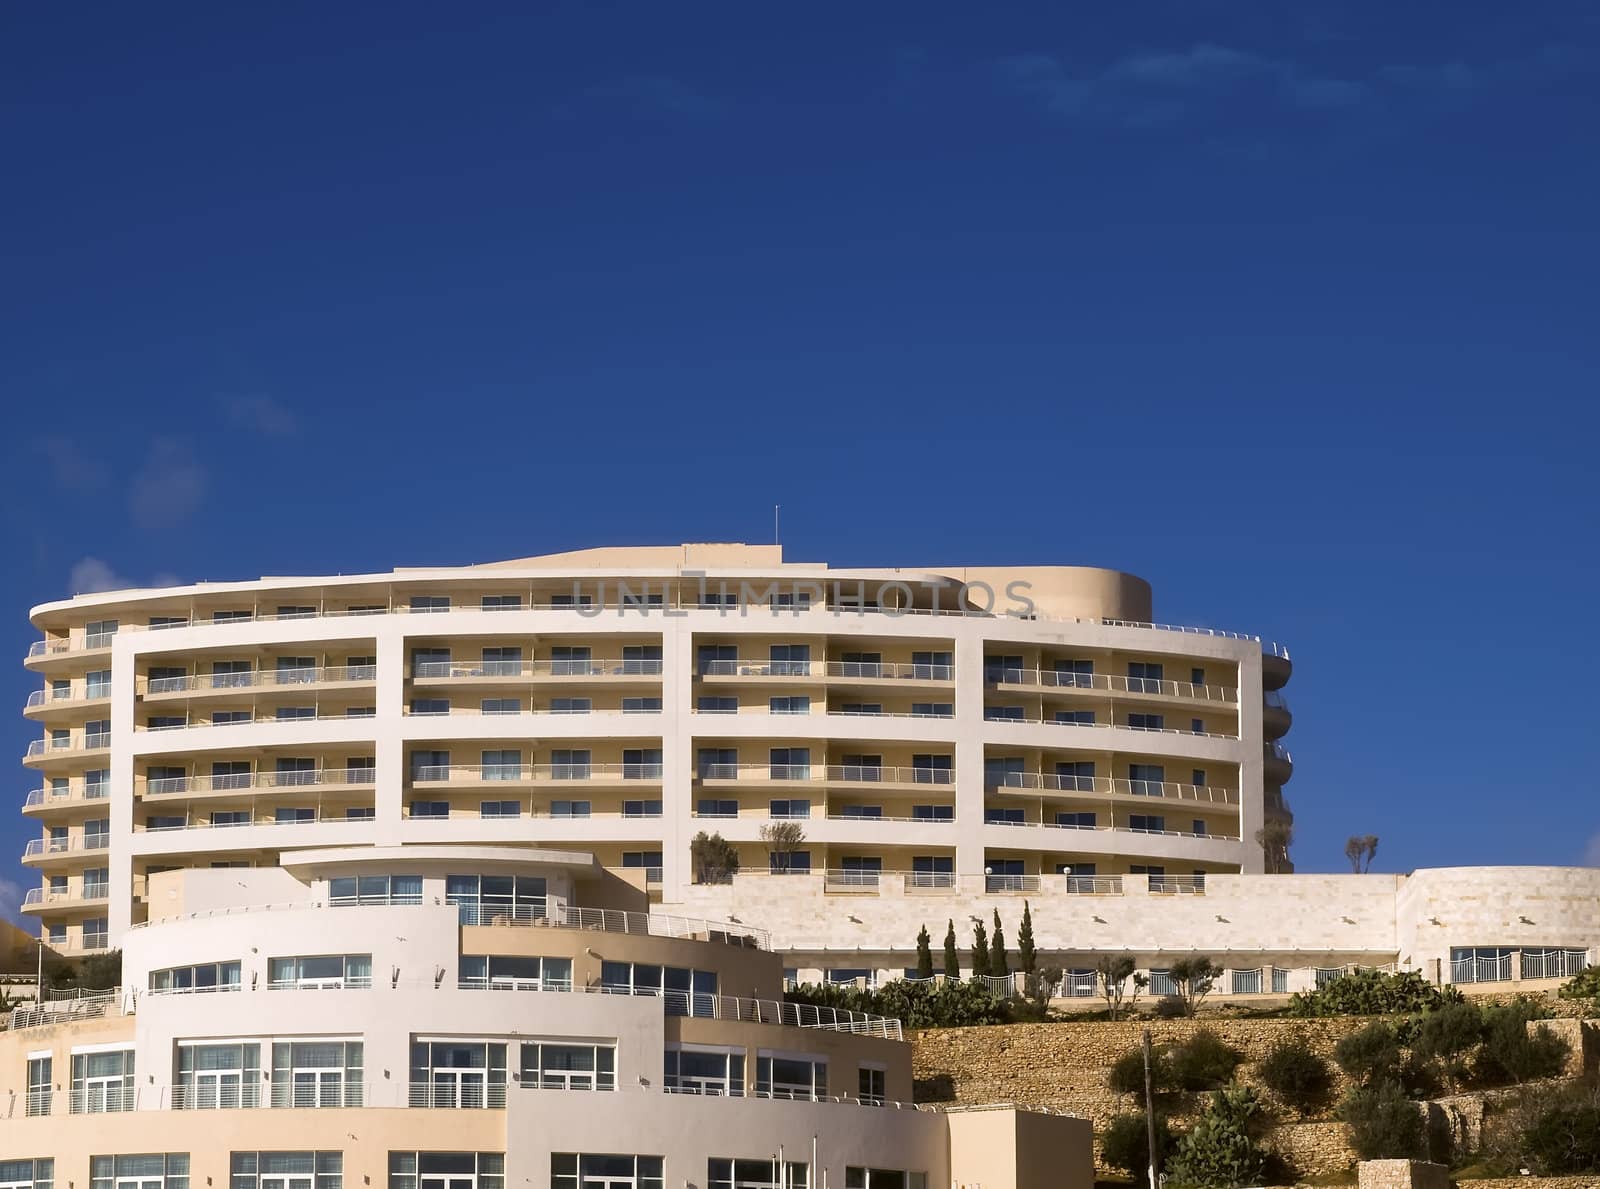 Modern Mediterranean architecture of a tourist resort in Malta